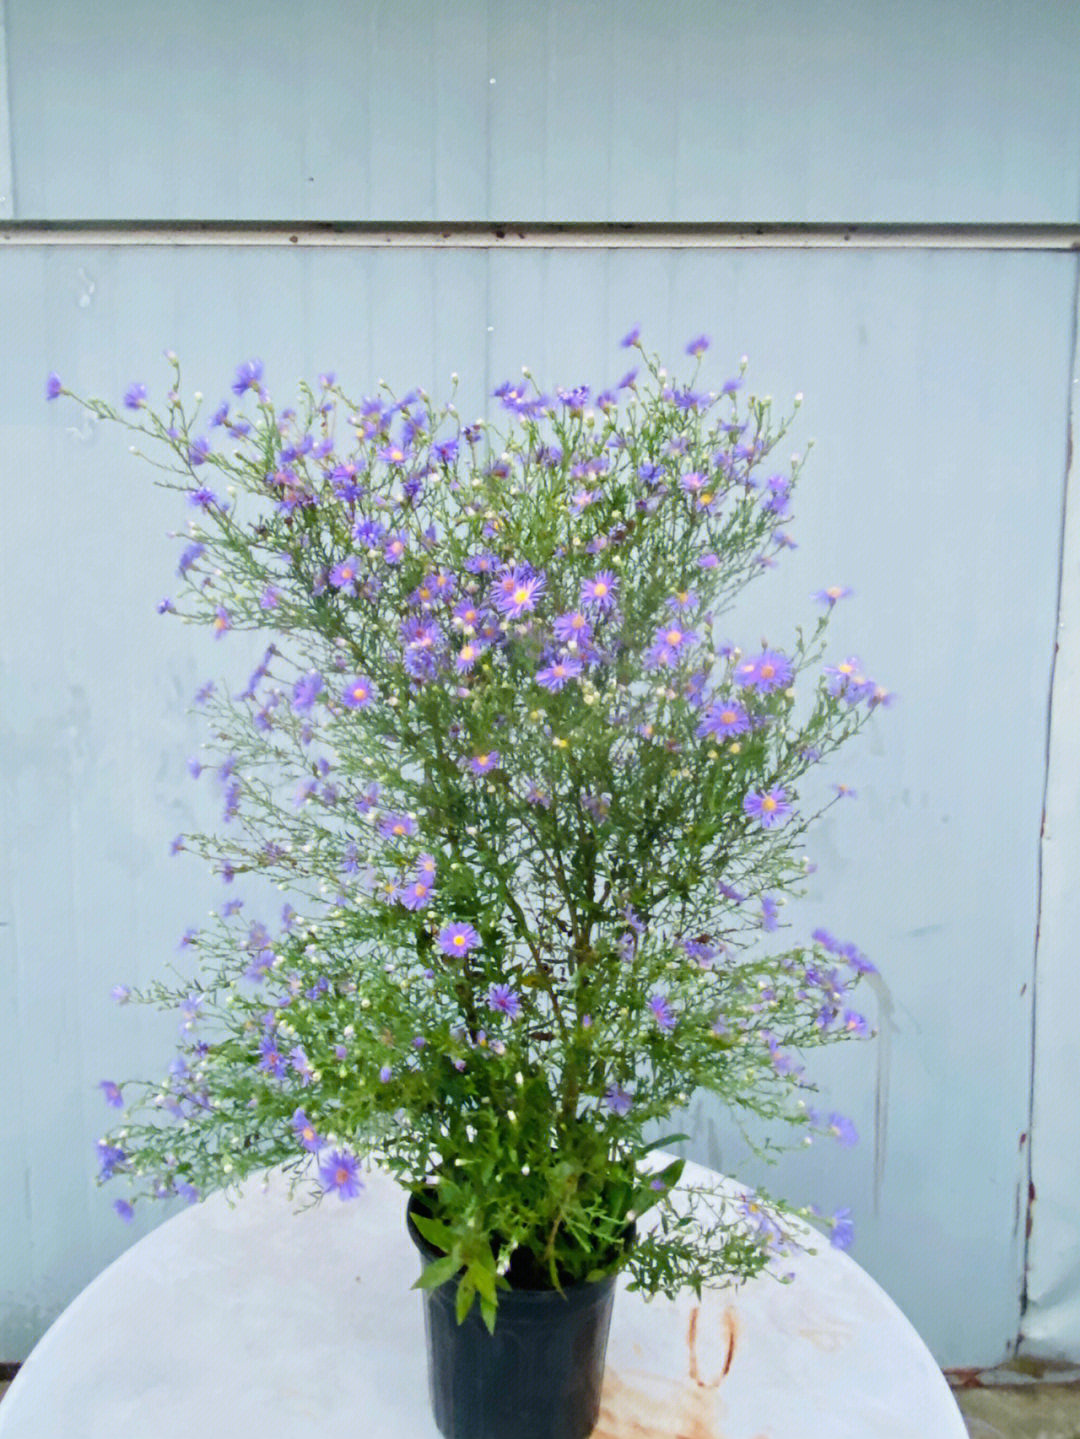 捕捉美丽的瞬间蓝花紫菀今年第一盆爆花